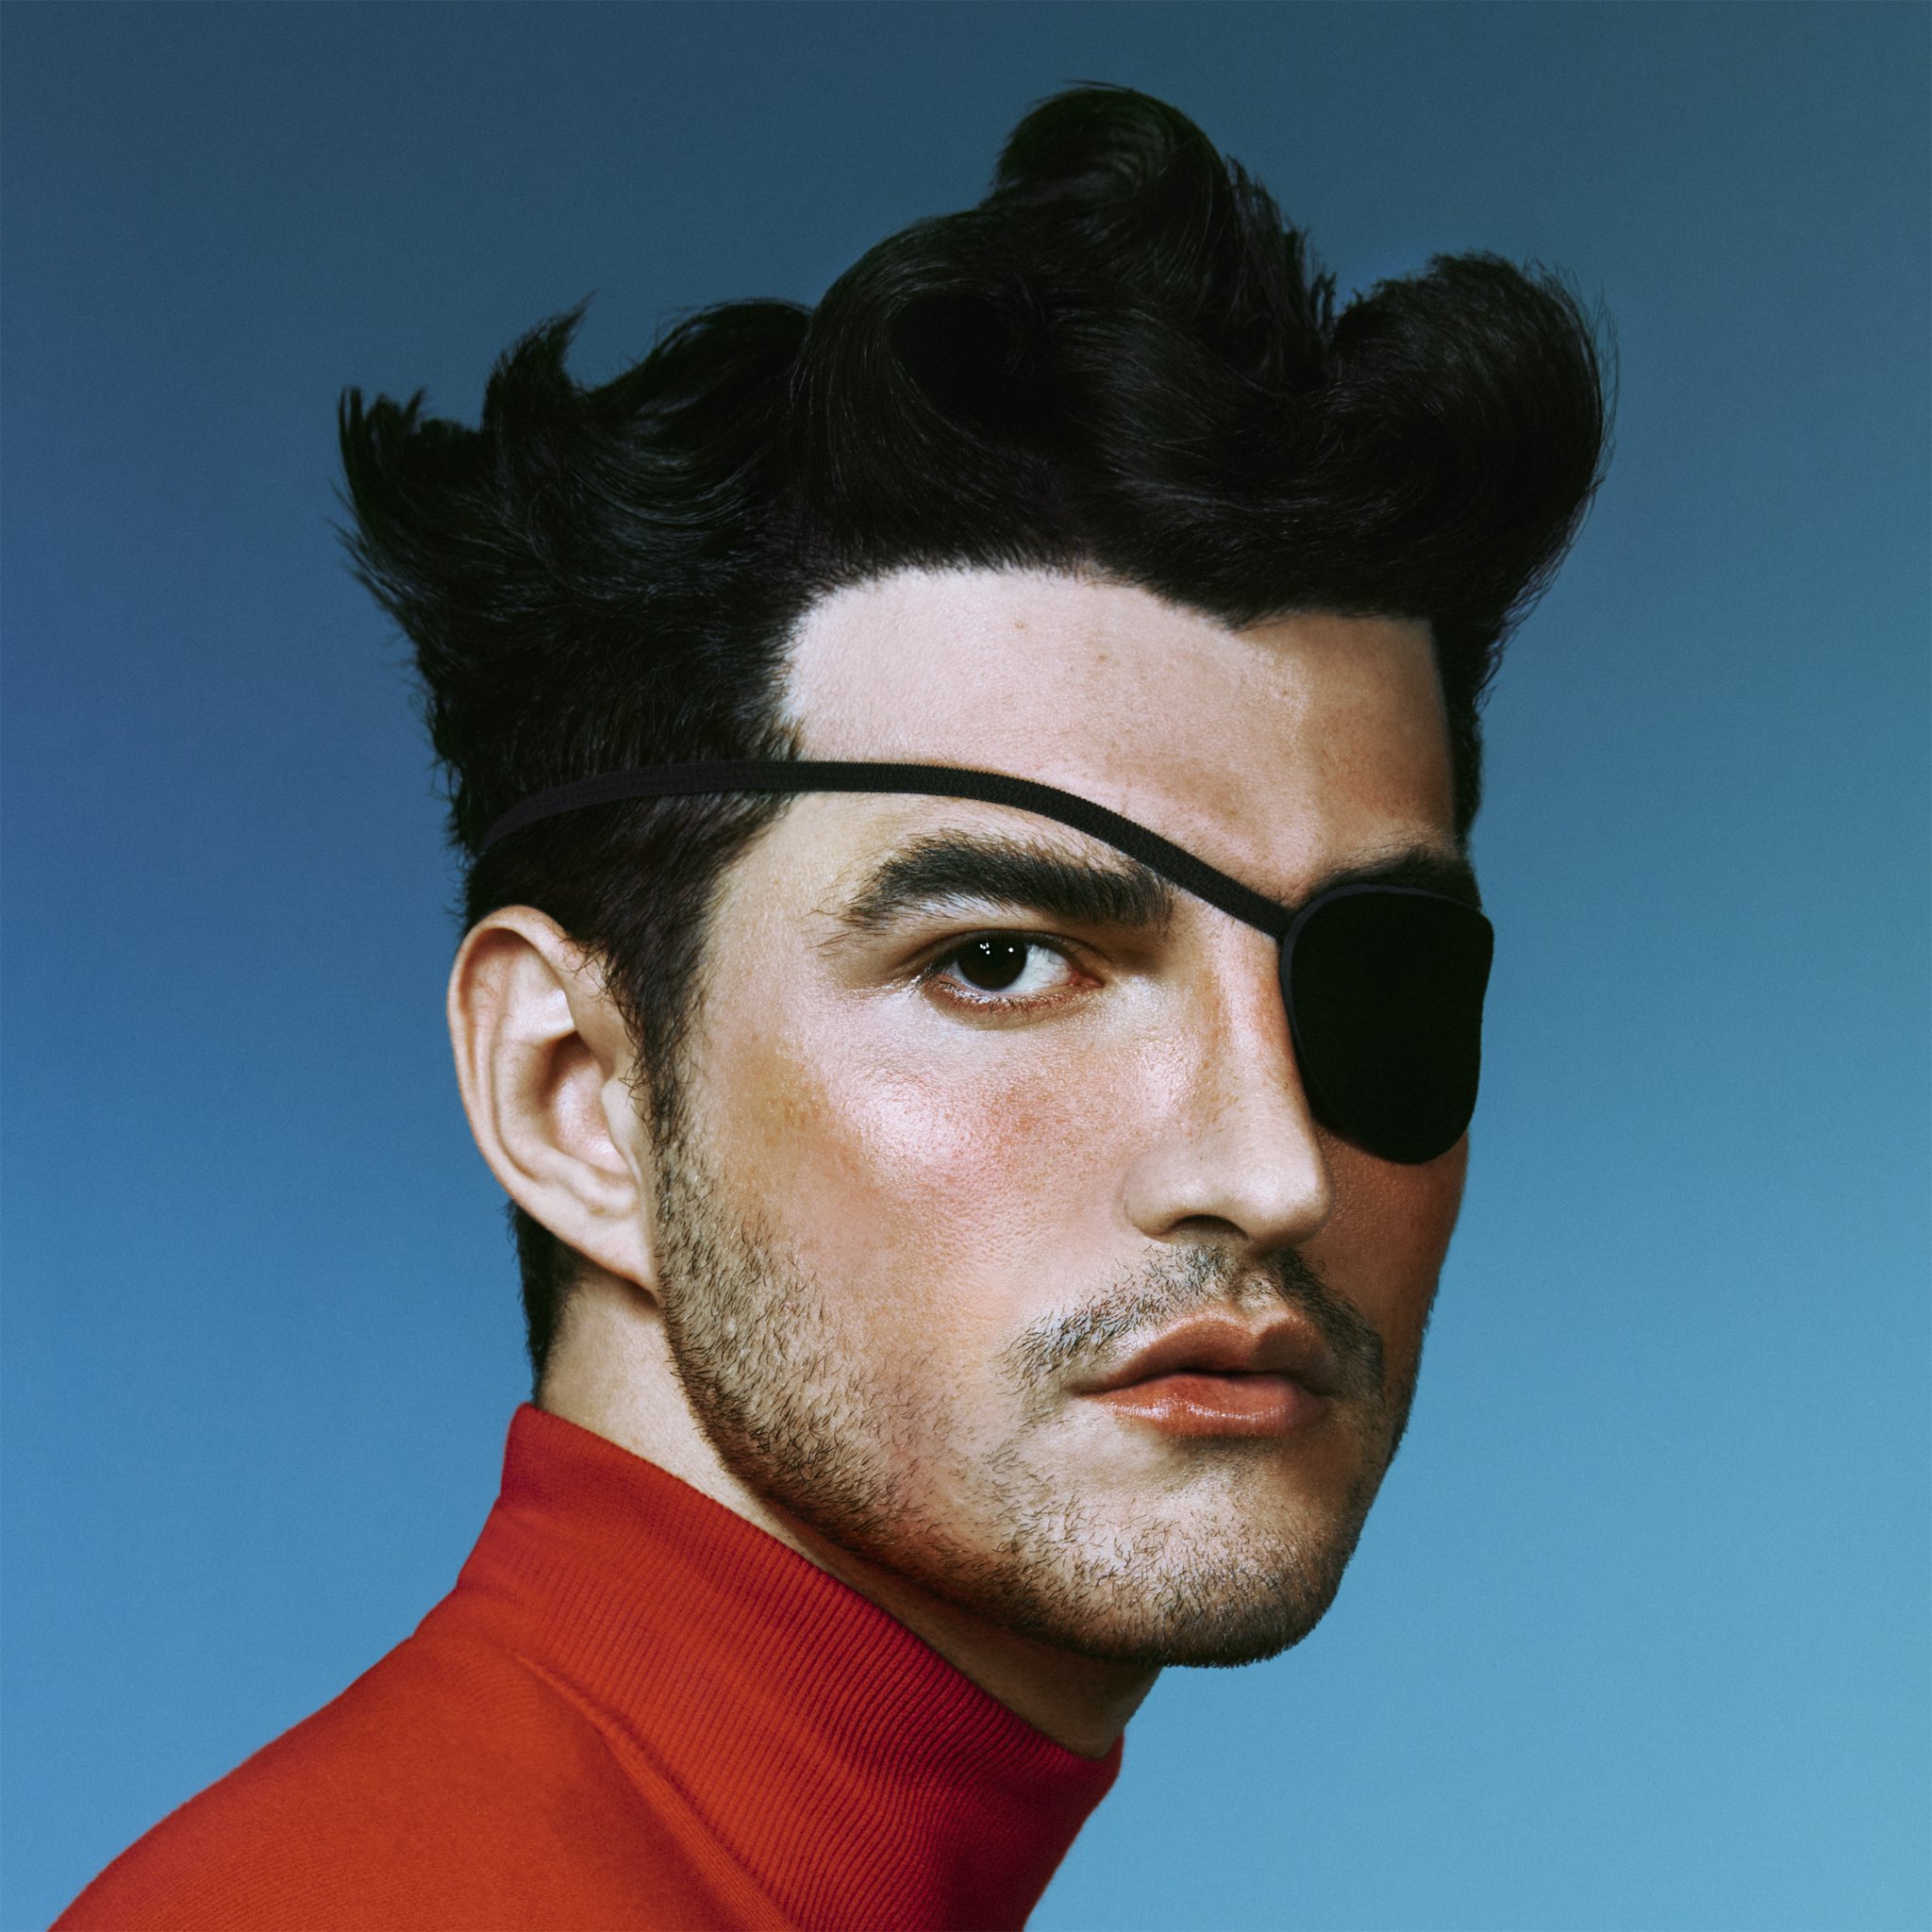 Capa do álbum Pirata. Jão, um homem jovem e branco, está posicionado ao centro da imagem. Ele está usando uma blusa vermelha de gola alta e um tapa-olho preto no olho direito. O fundo da foto é de cor azul clara.